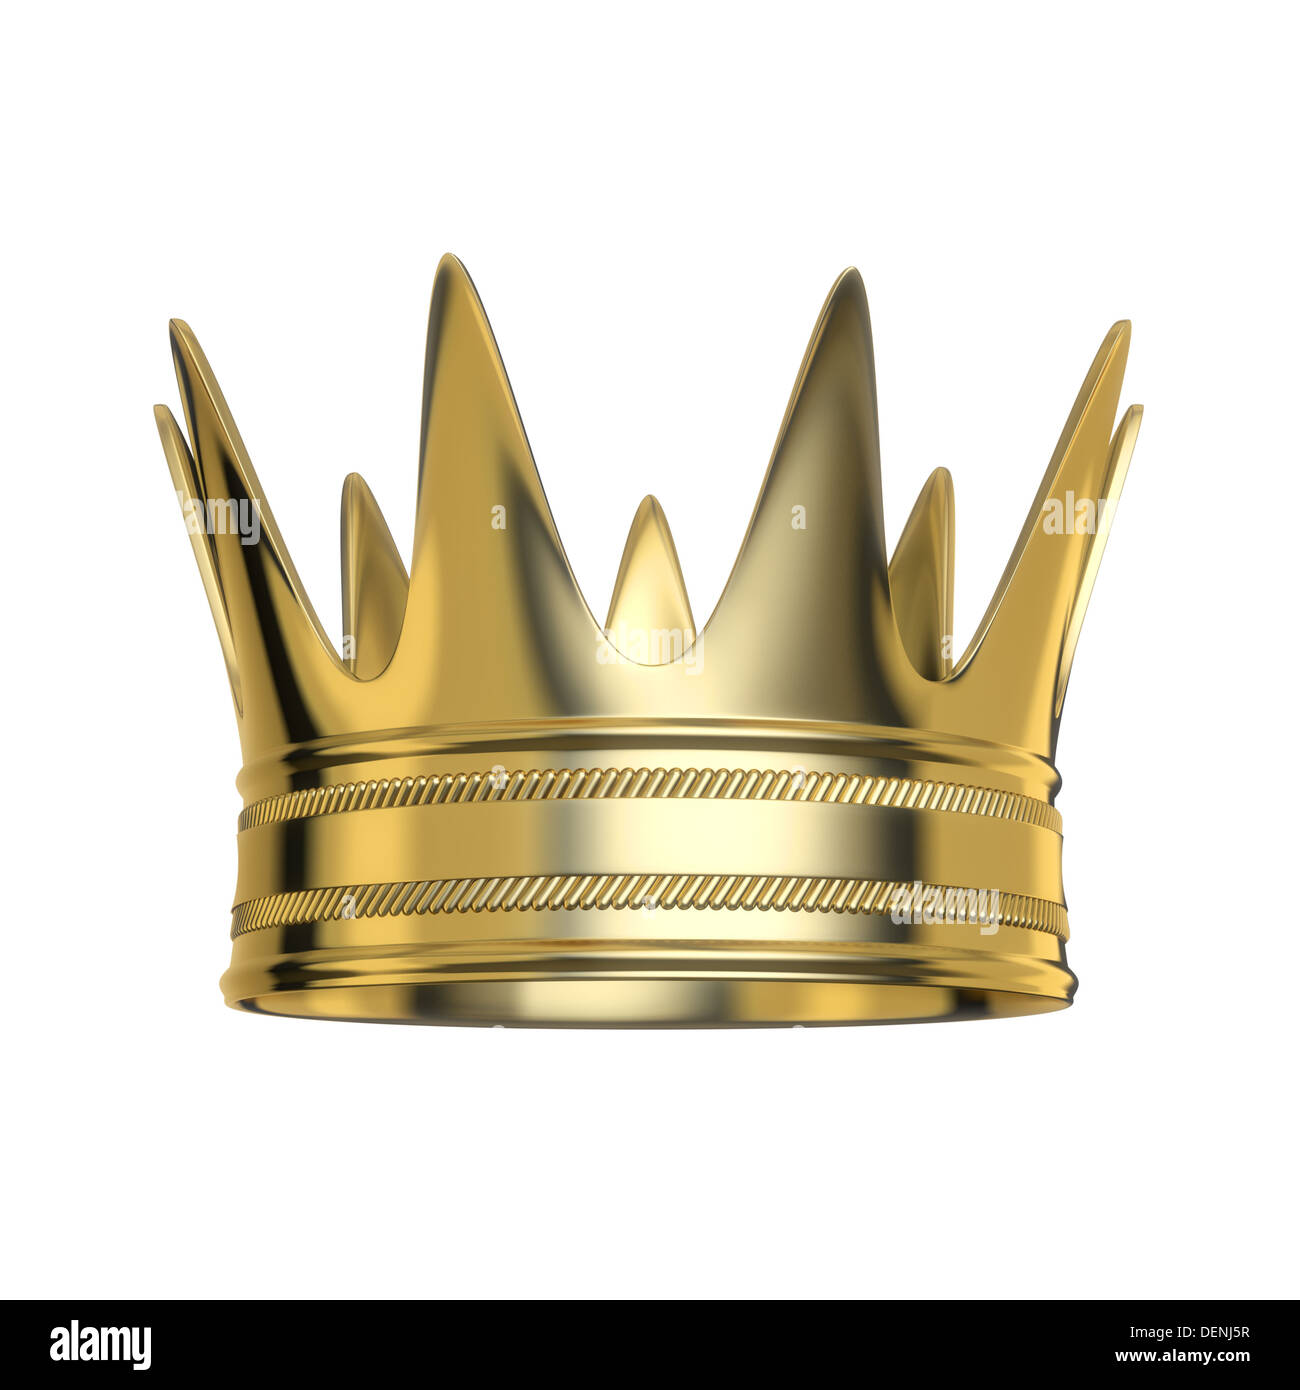 La couronne royale d'or isolé sur fond blanc Banque D'Images